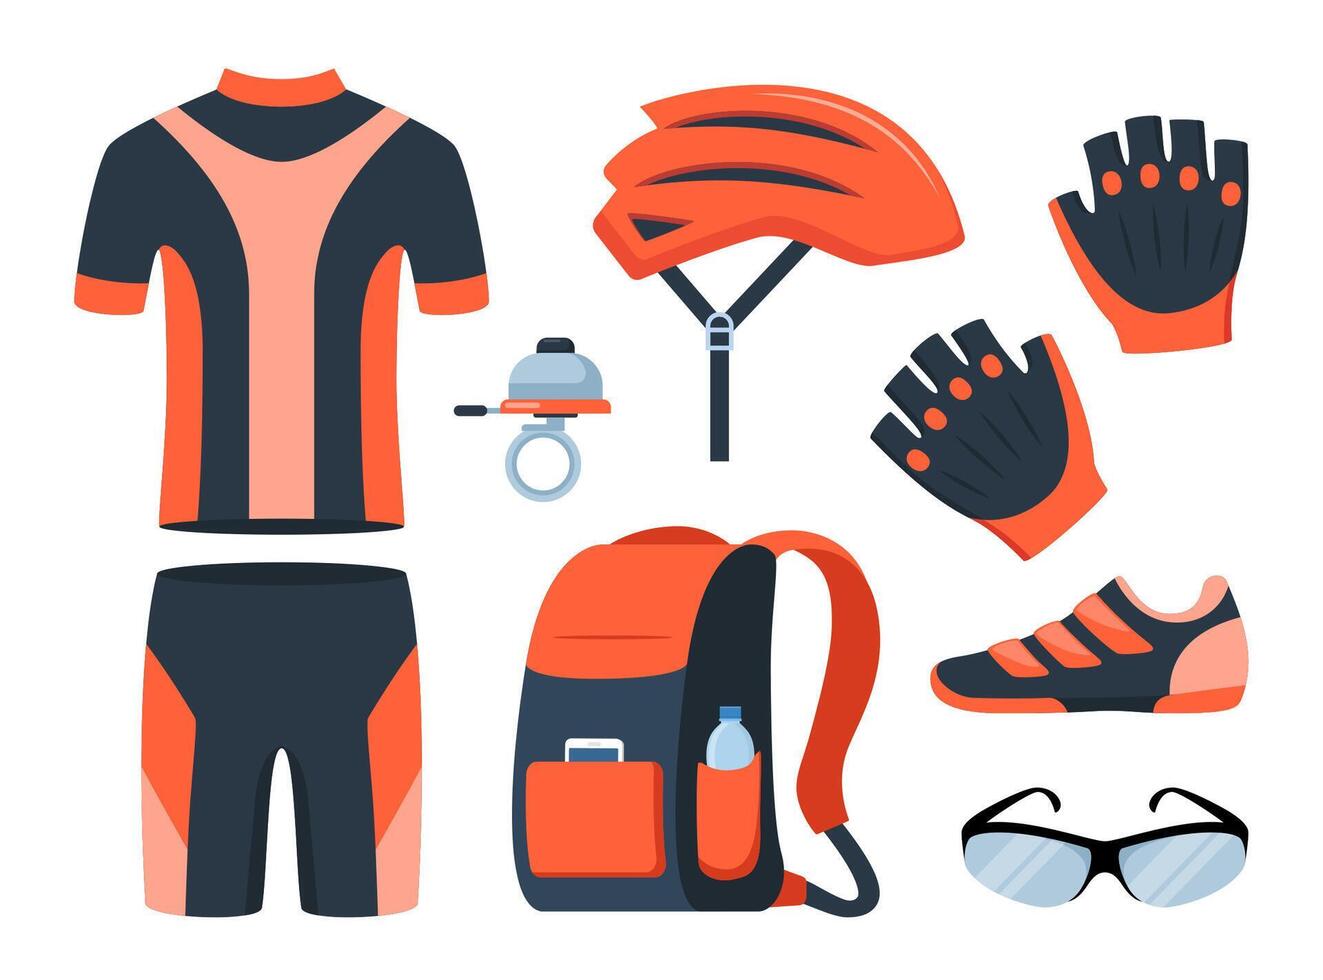 bicicleta colocar. bicicleta equipo. ciclista engranaje, ropa de deporte para motorista, pista accesorios para extremo deporte formación aislado en blanco. ilustración. vector